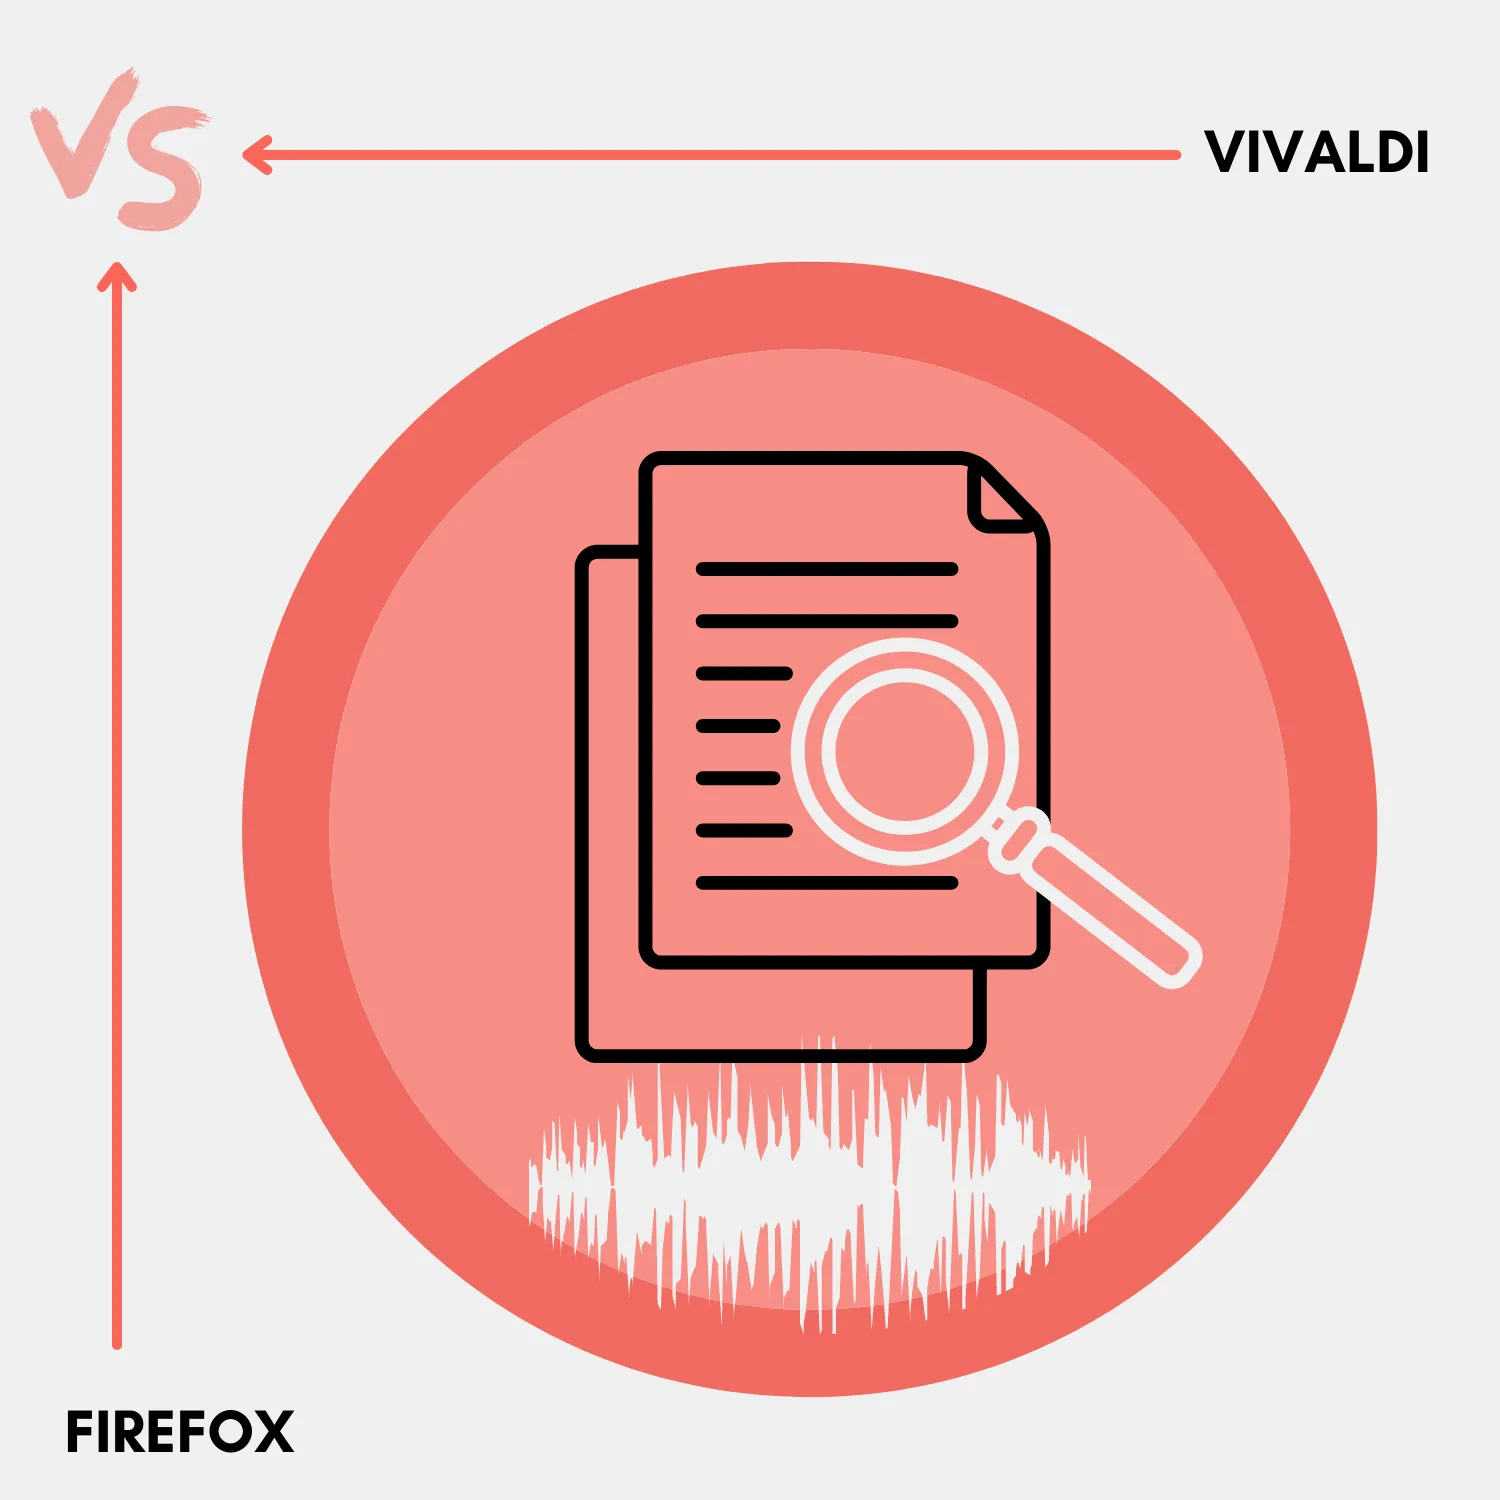 Vivaldi Browser vs. Firefox